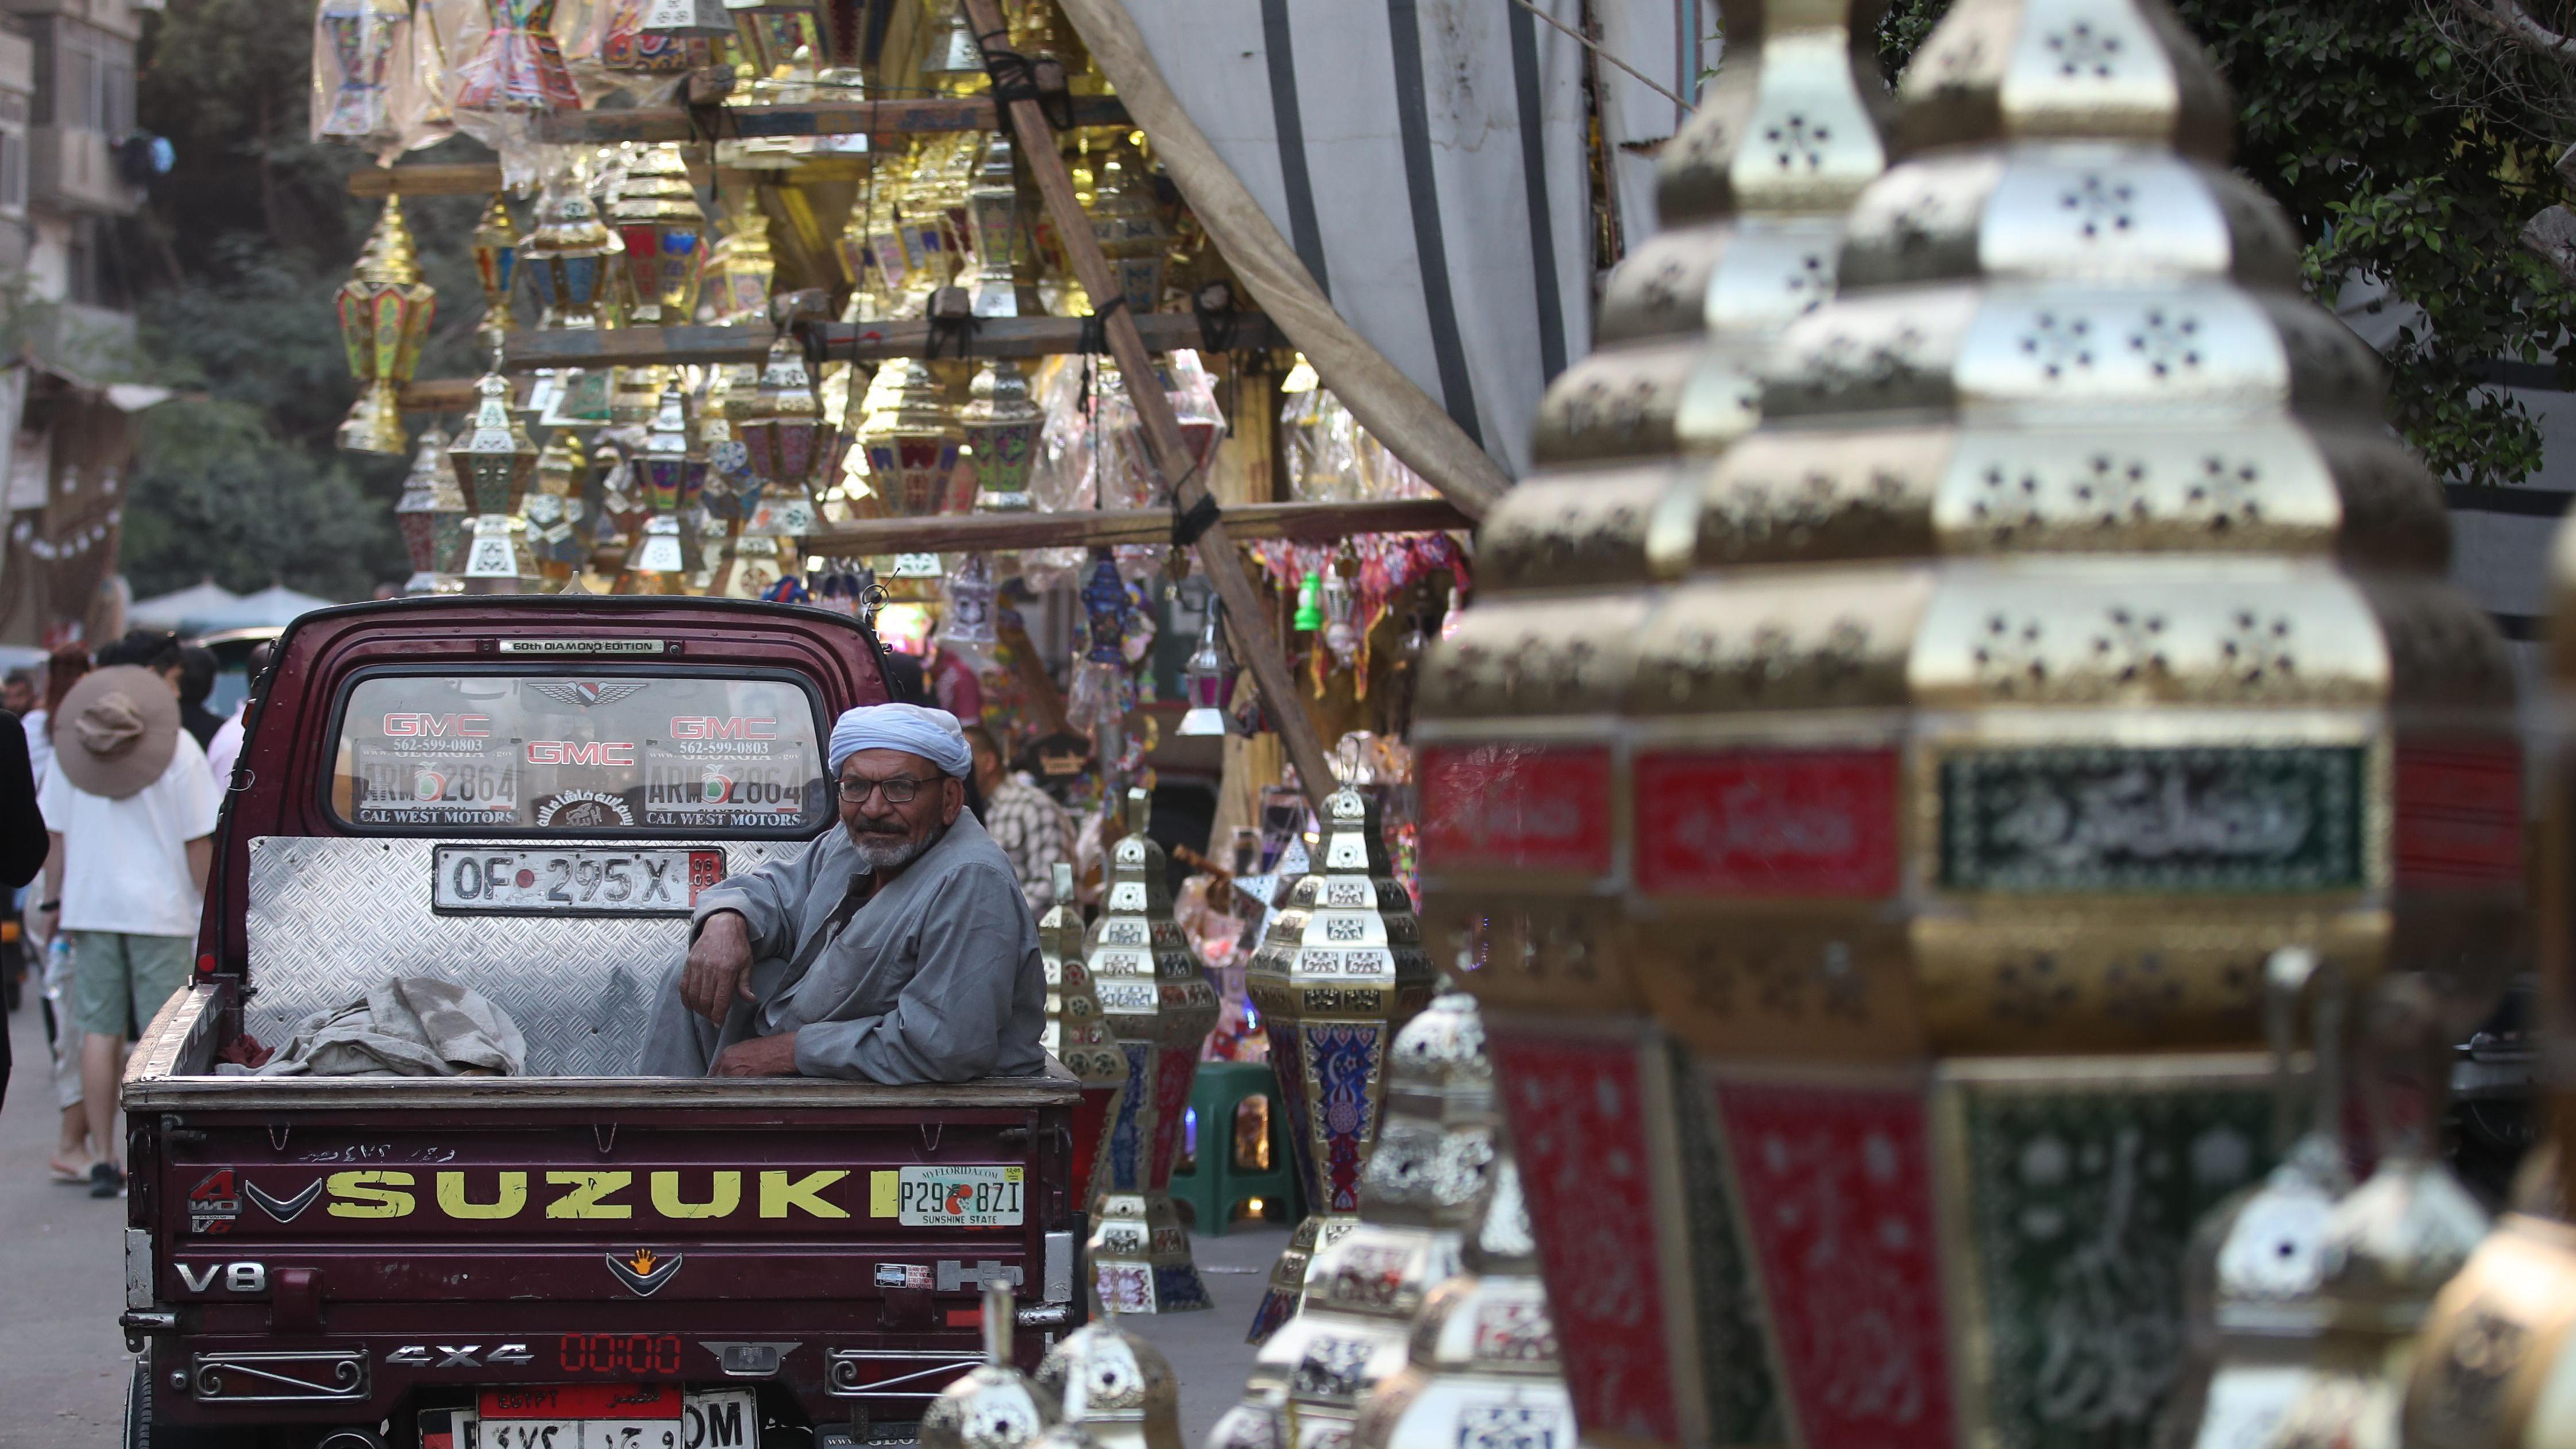 يستقبل المصريون شهر رمضان وسط غلاء حاد في الأسعار